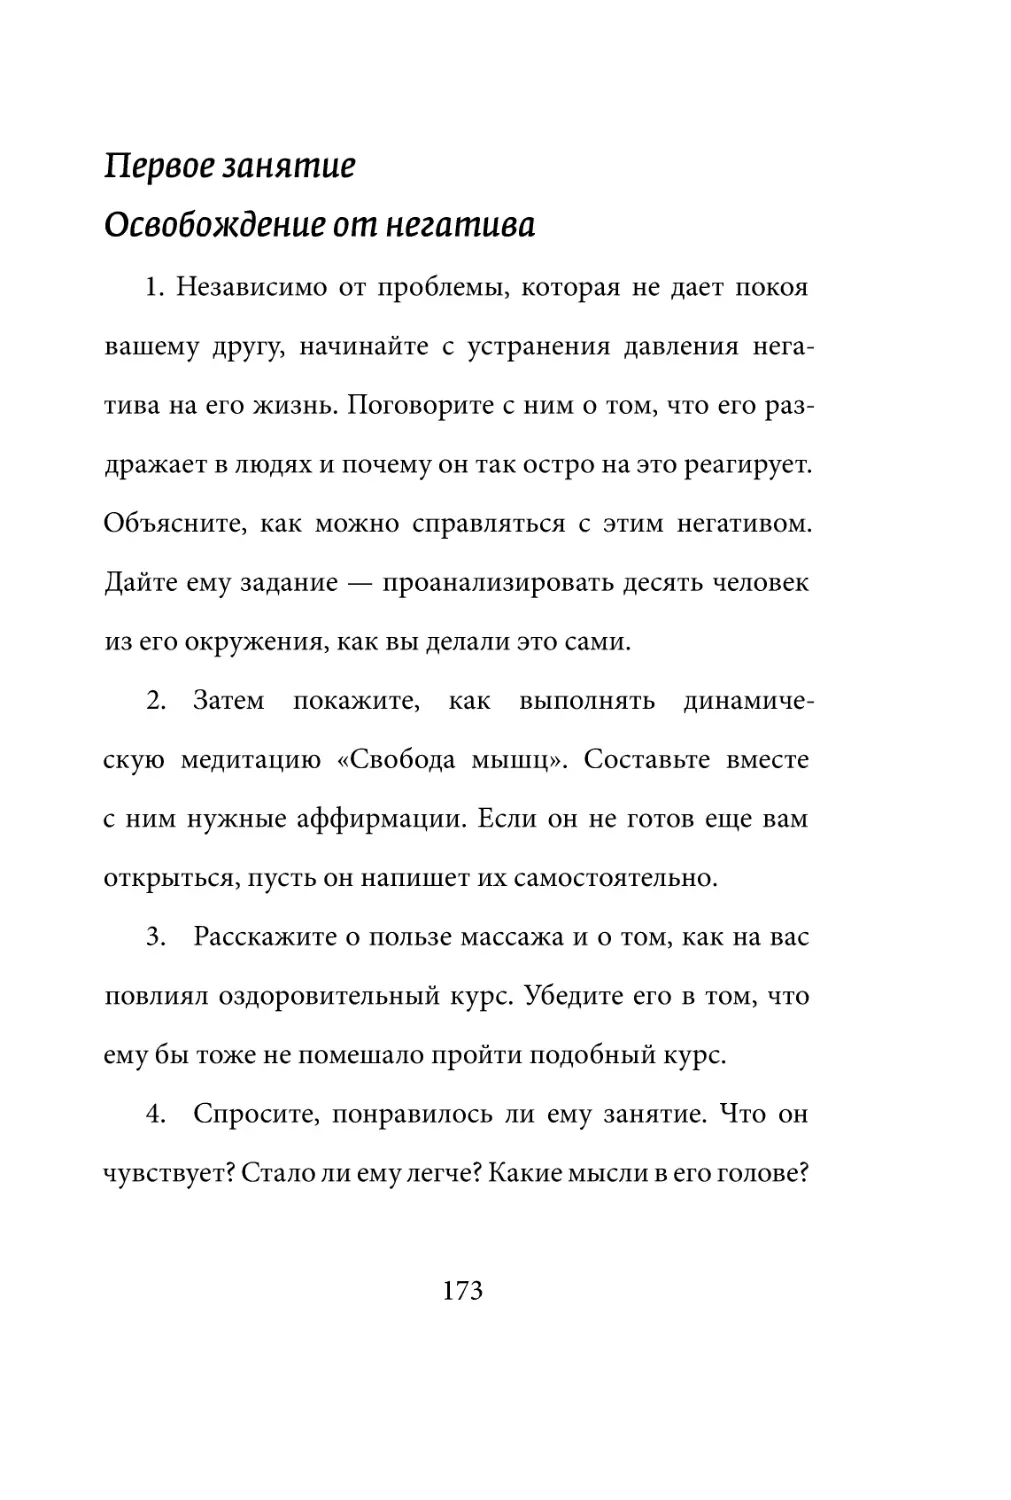 Sergey_Filippov_Dnevnik_samorazvitia_Evolyutsia_Vnutrennego_Sostoyania_173.pdf (p.173)